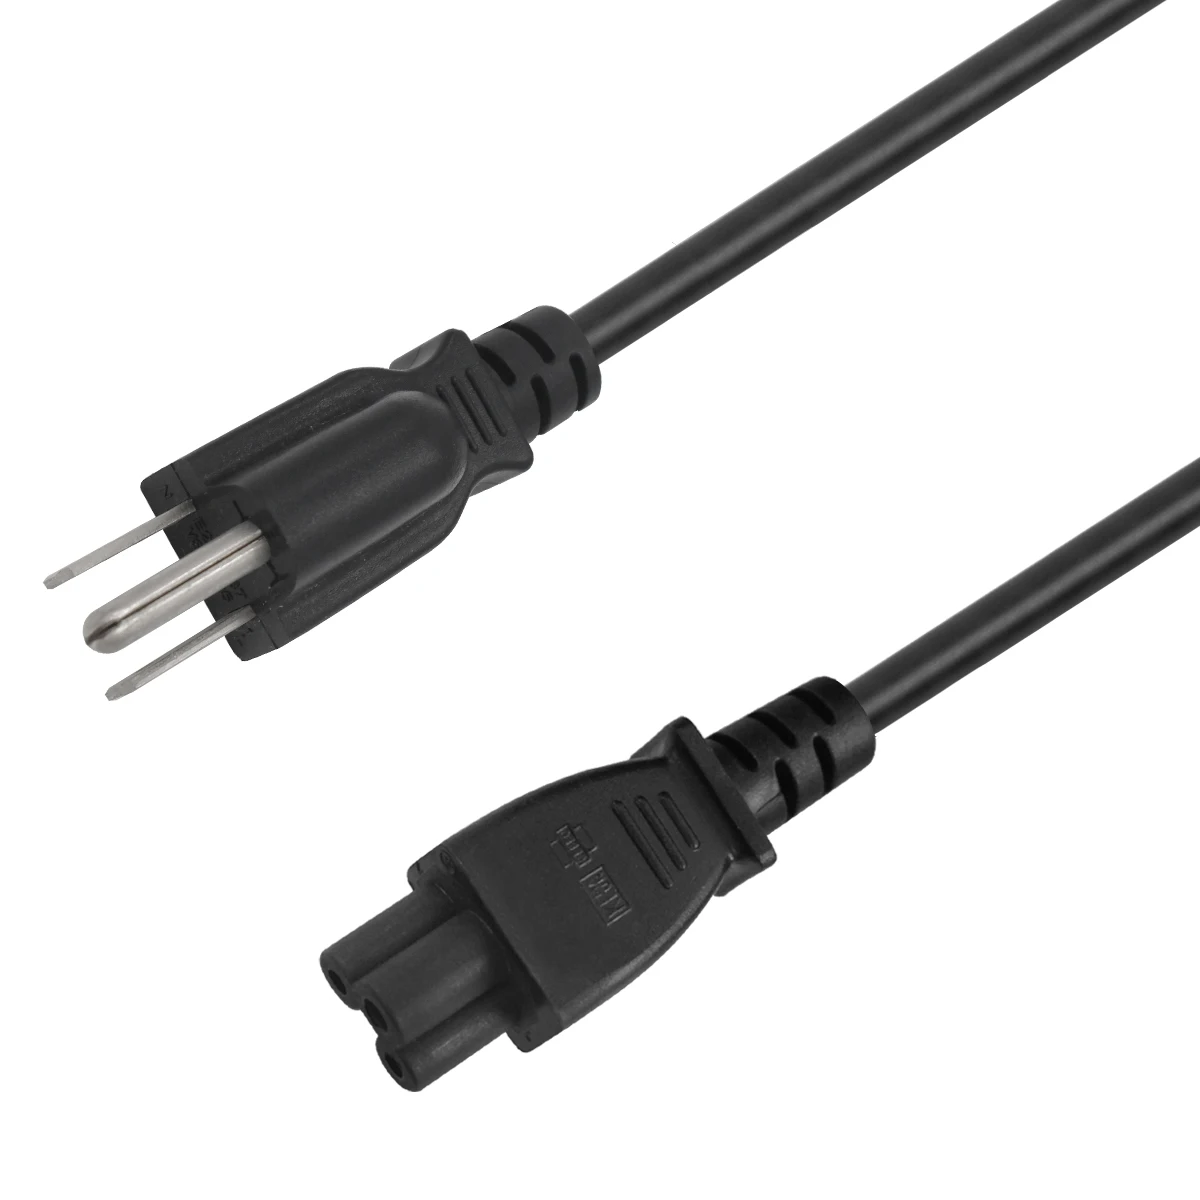 Usa Iec C13 NEMA 5-15p Power Cable 21